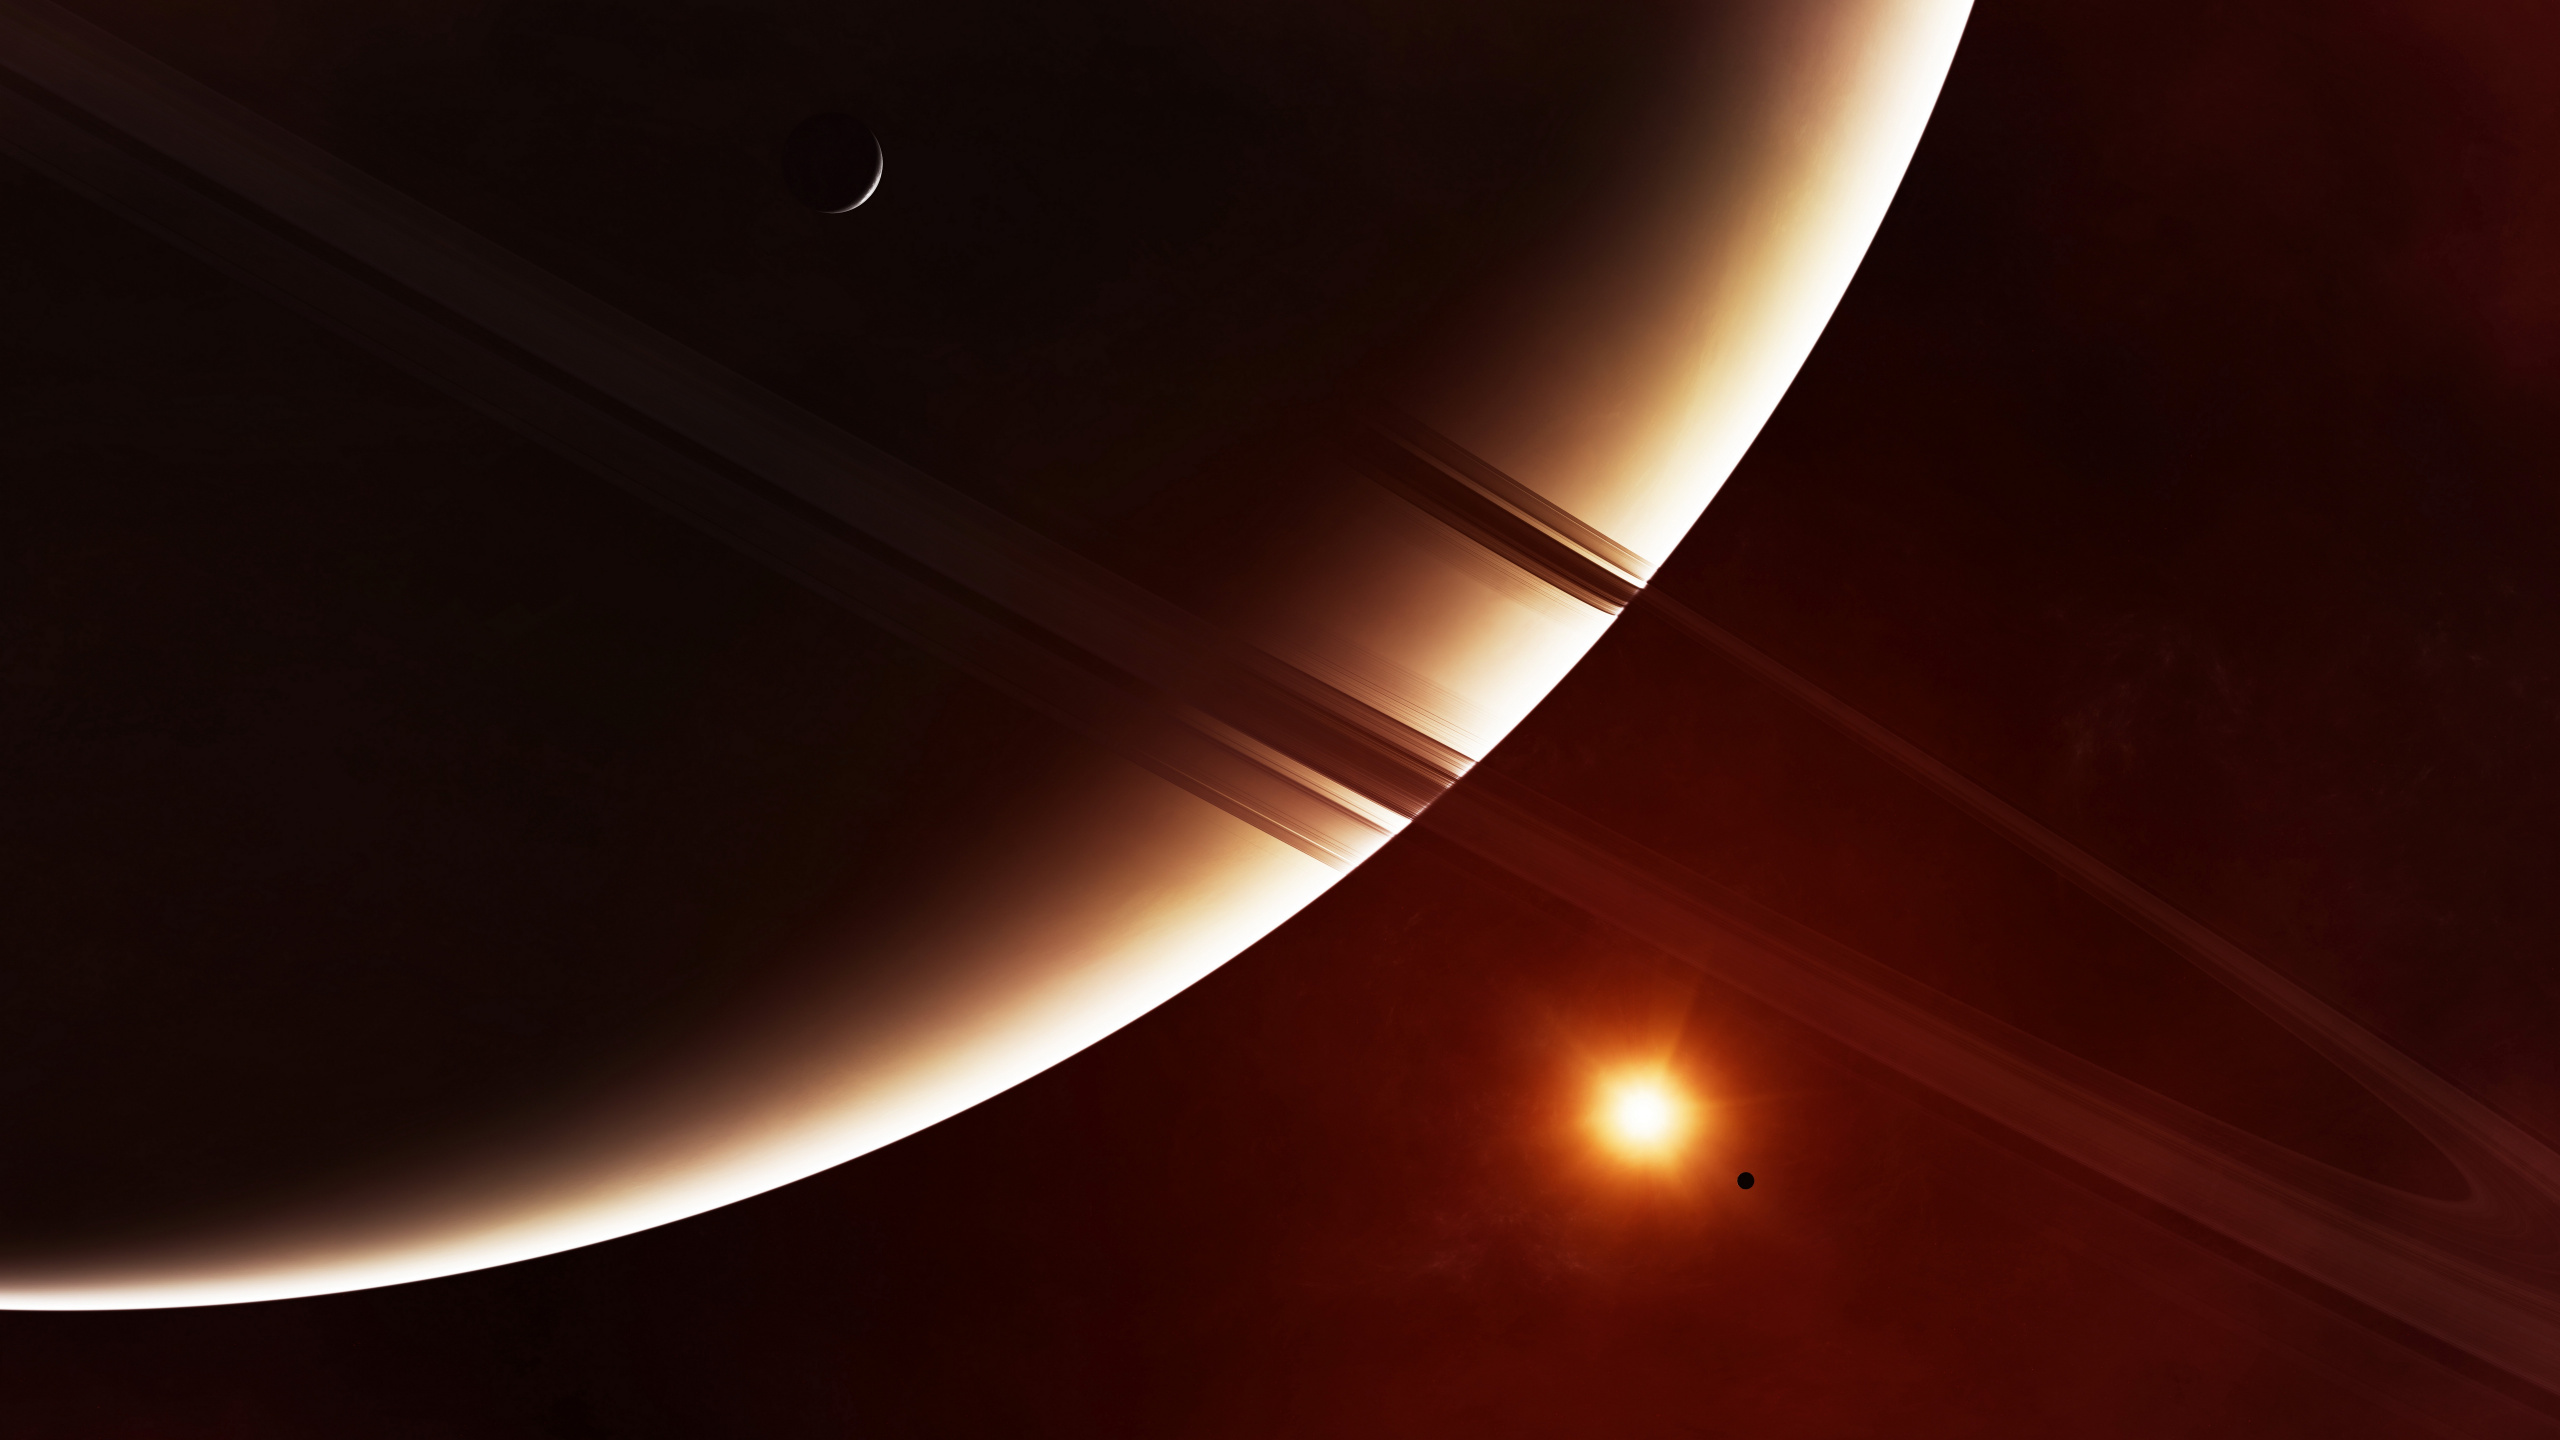 环系统, 土星, 这个星球, 天文学对象, 光 壁纸 2560x1440 允许